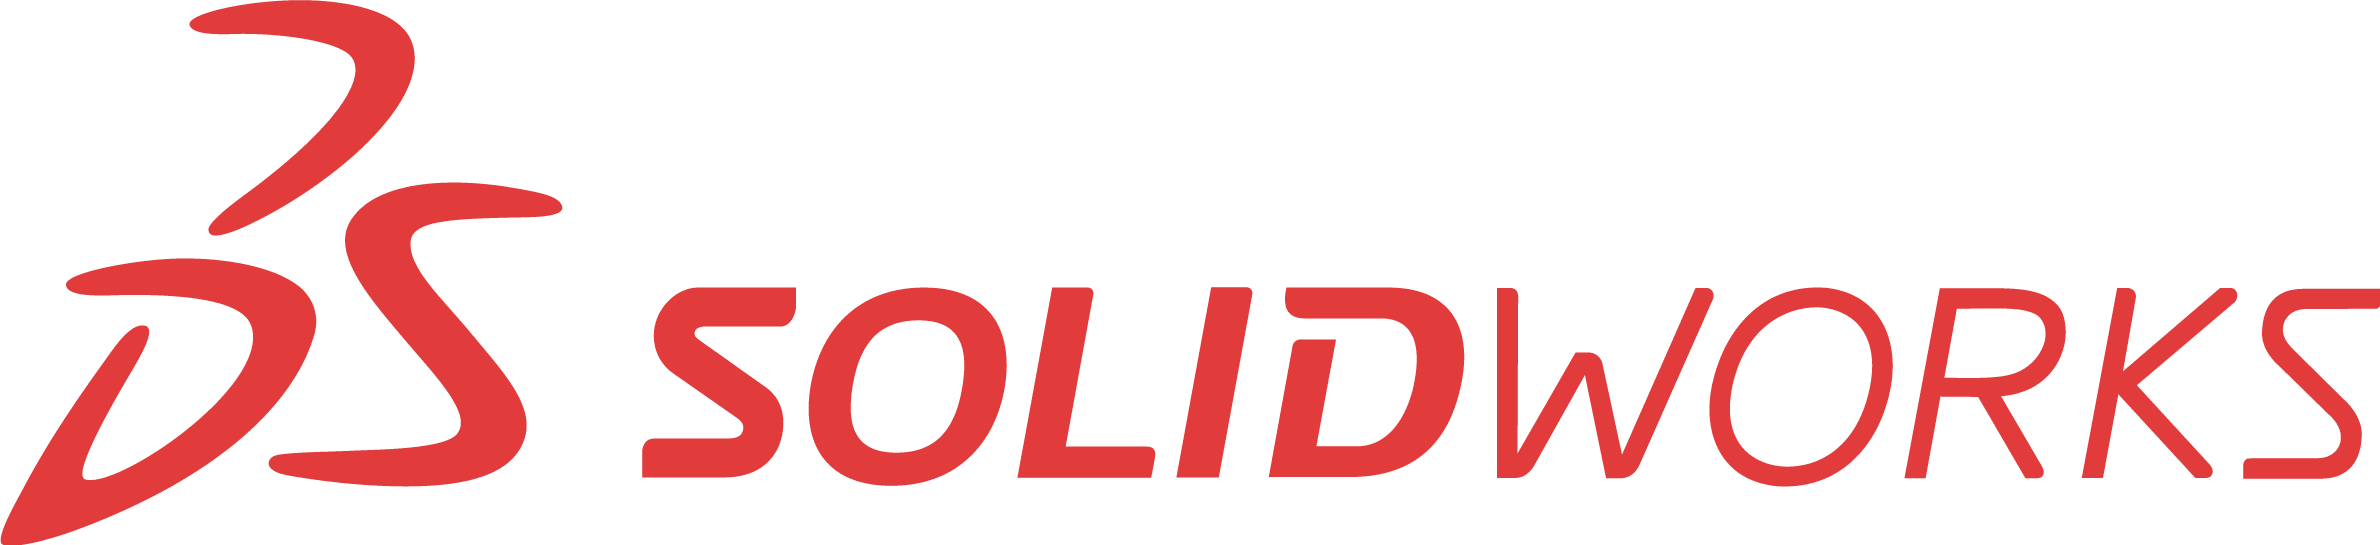 logo_solidworks